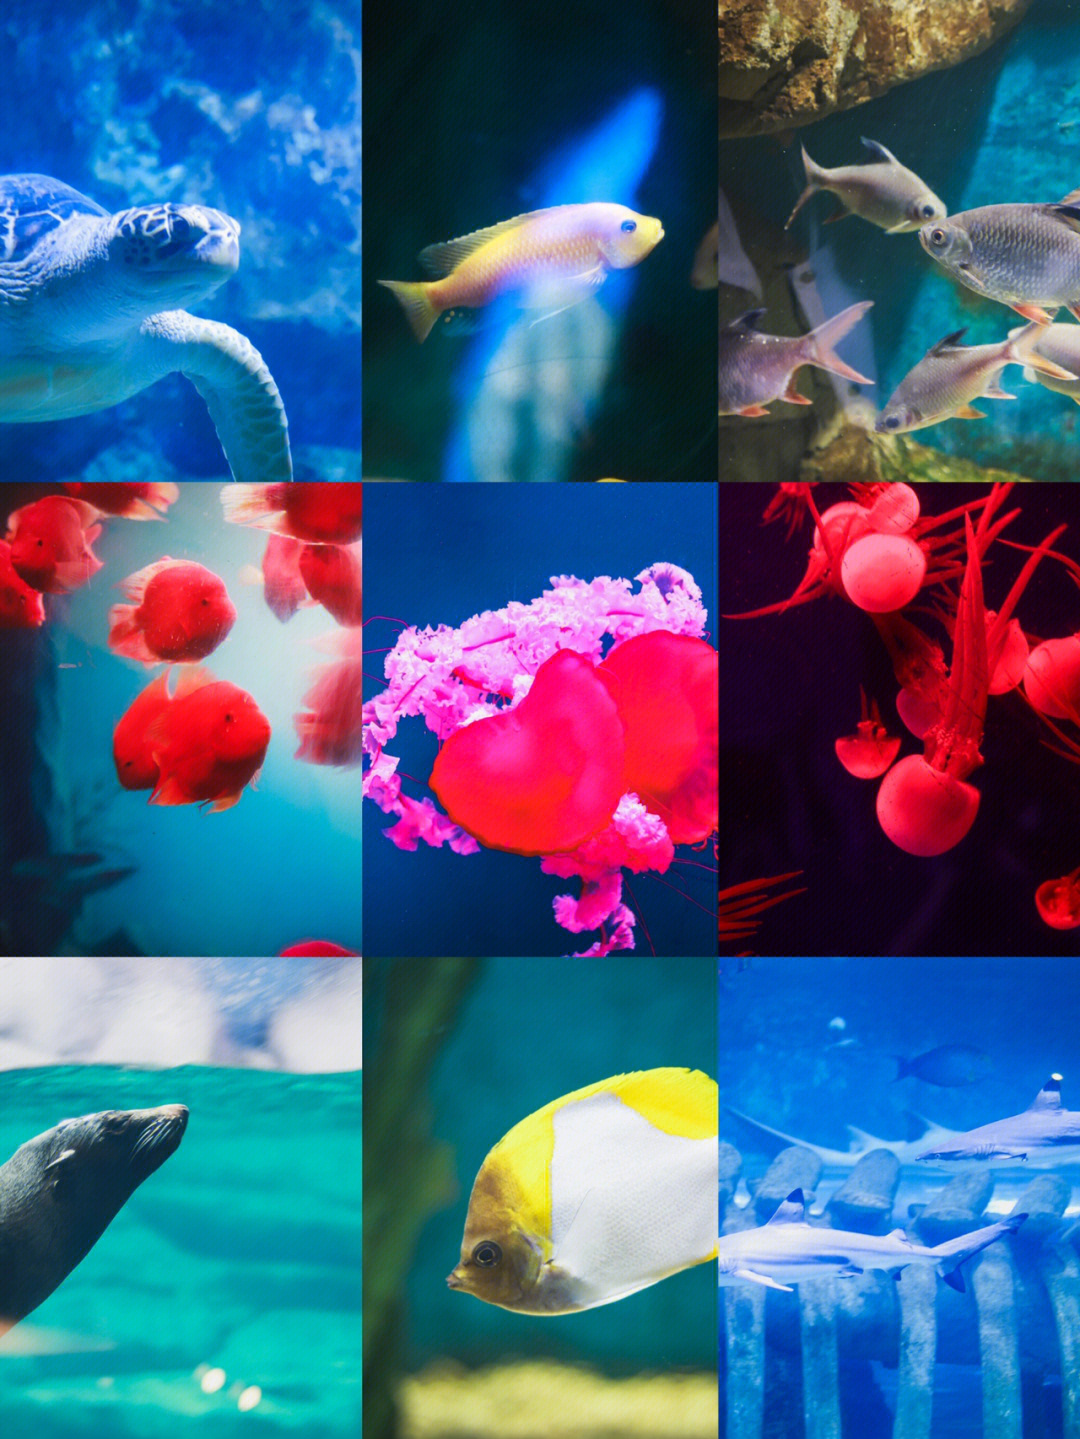 海底世界的鱼类名称图片